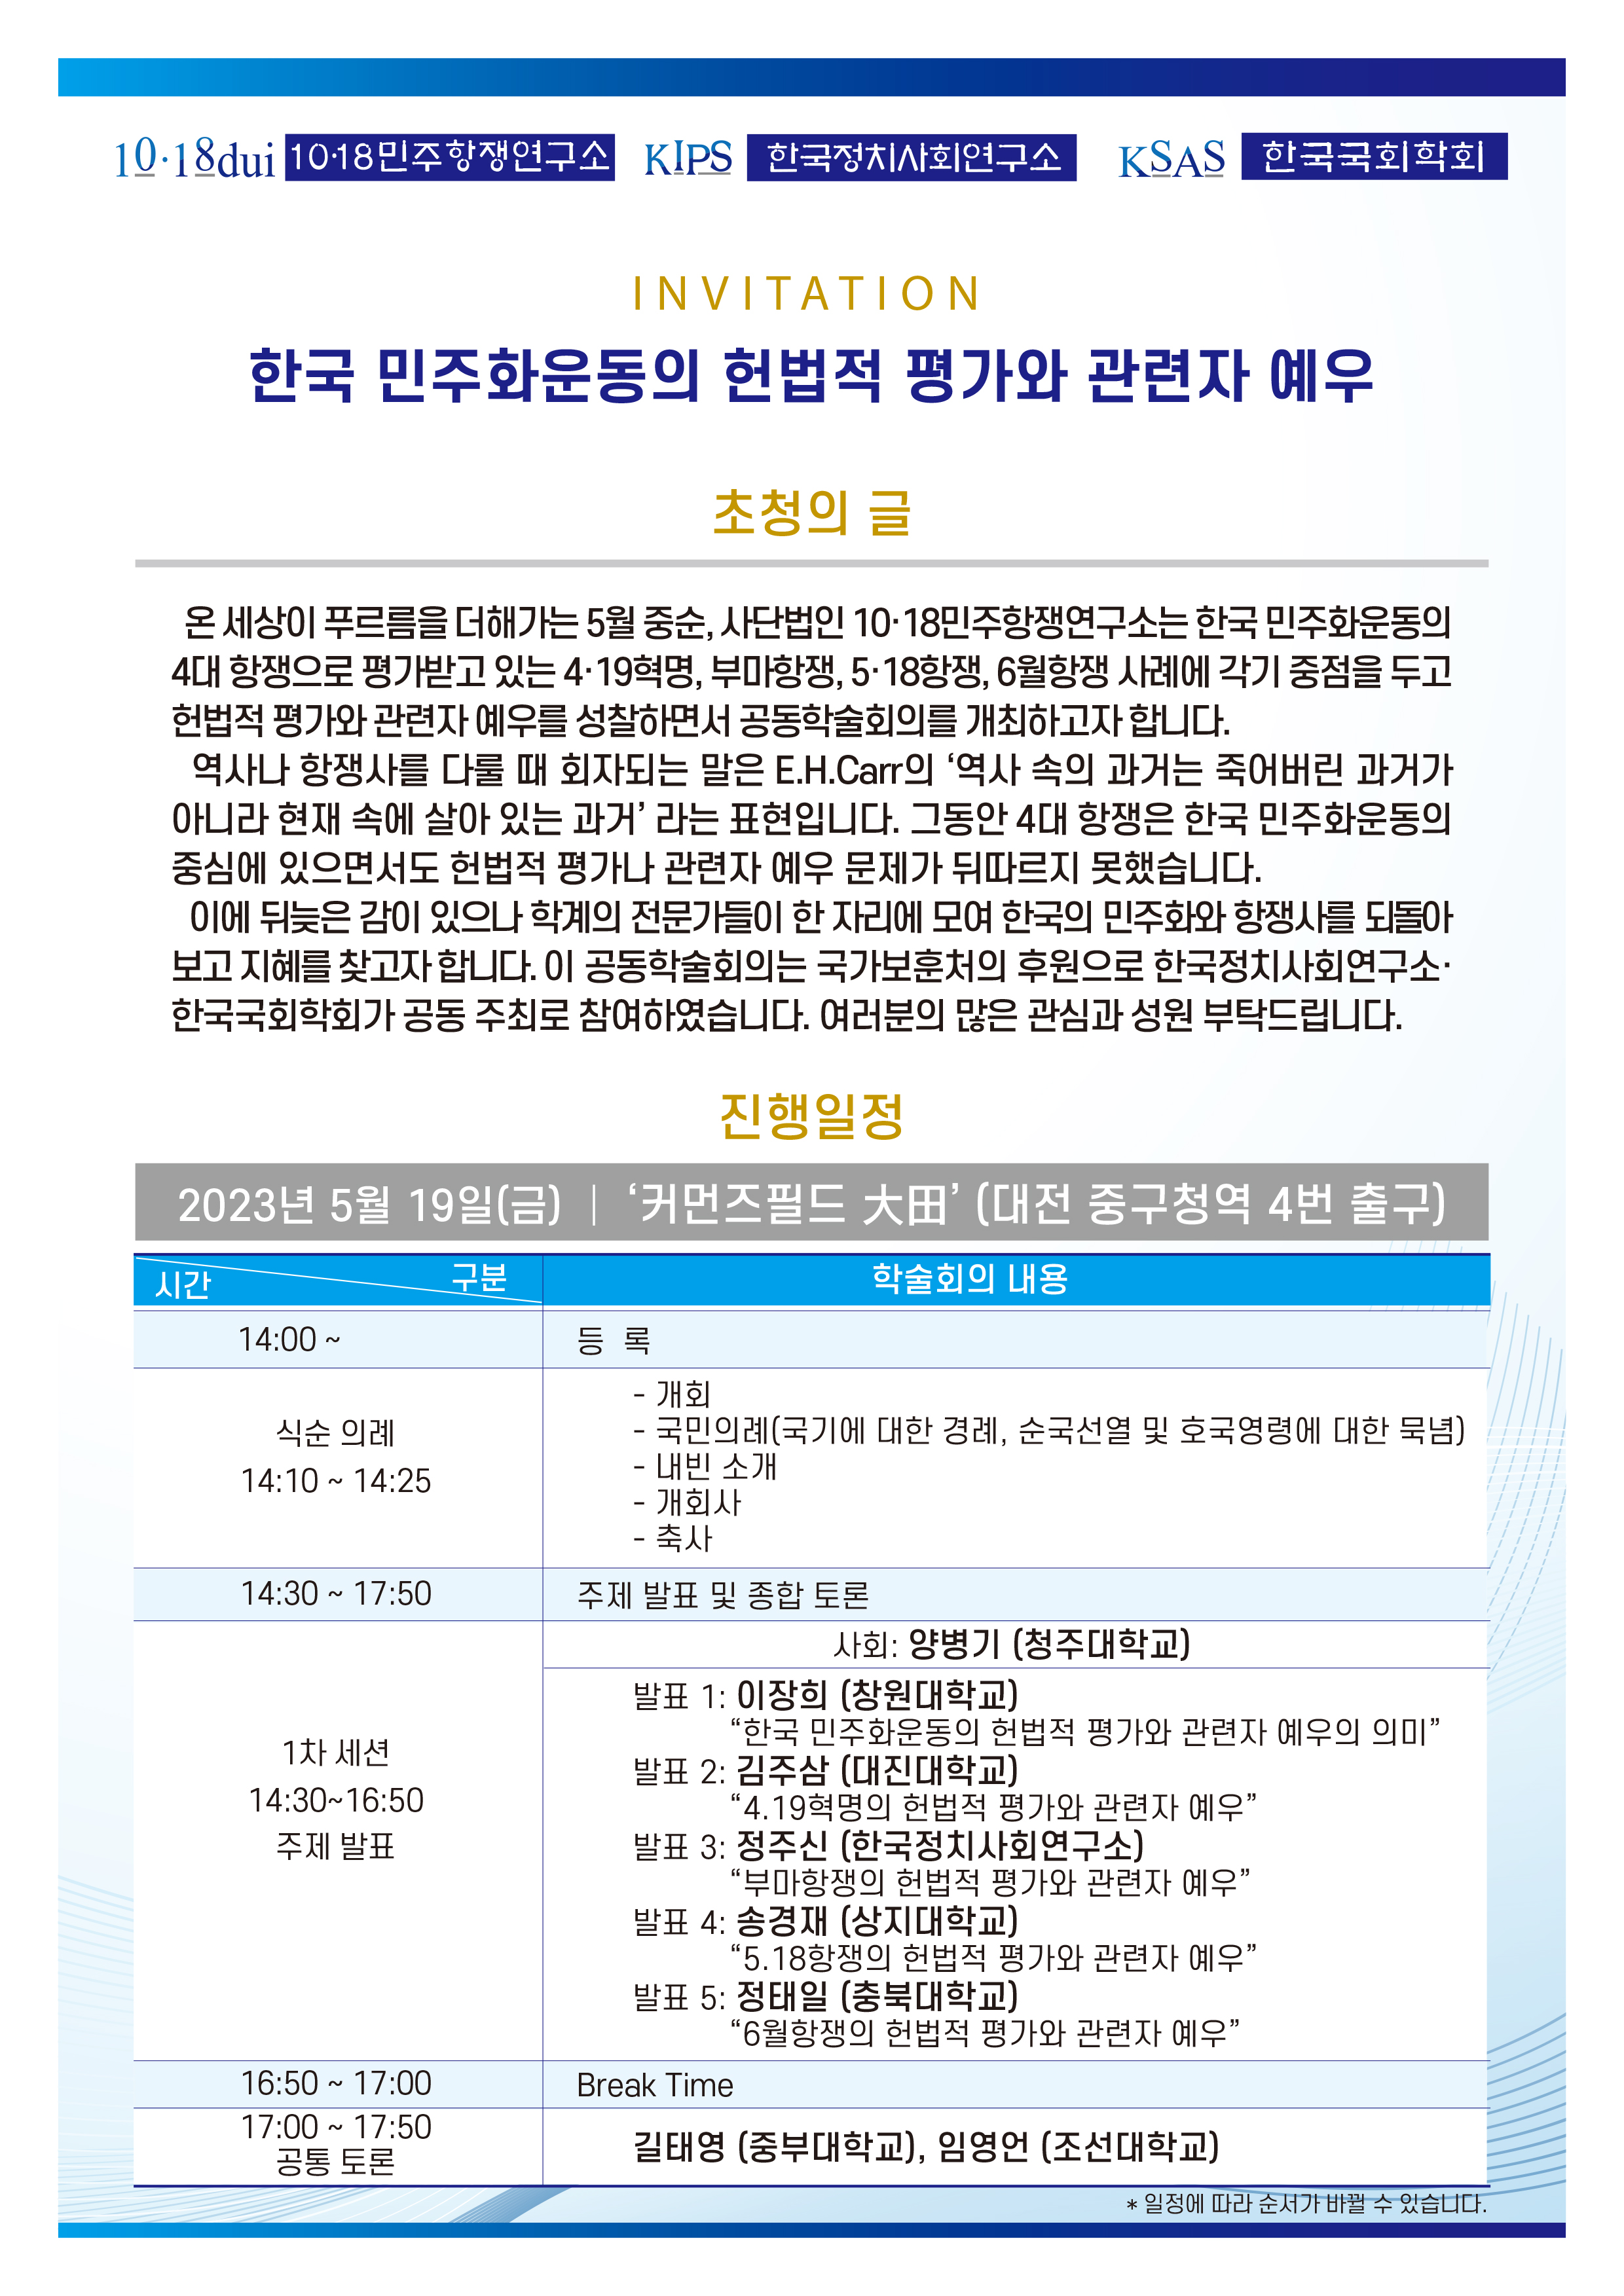 2023.5.19, "한국민주화운동의 헌법적 평가" 관련 공동학술회의, 초청장